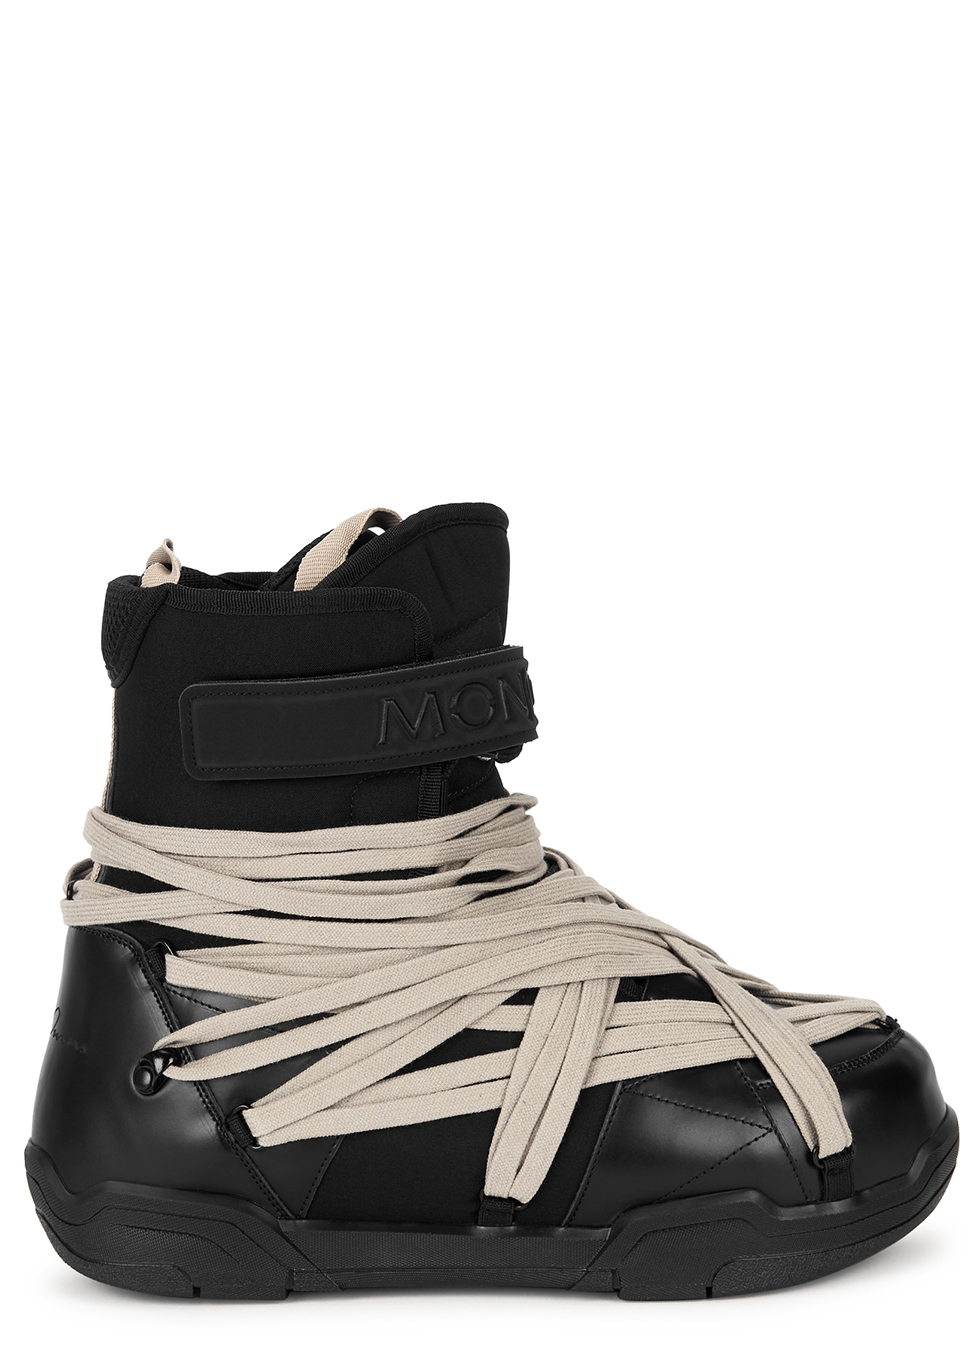 moncler snow shoes